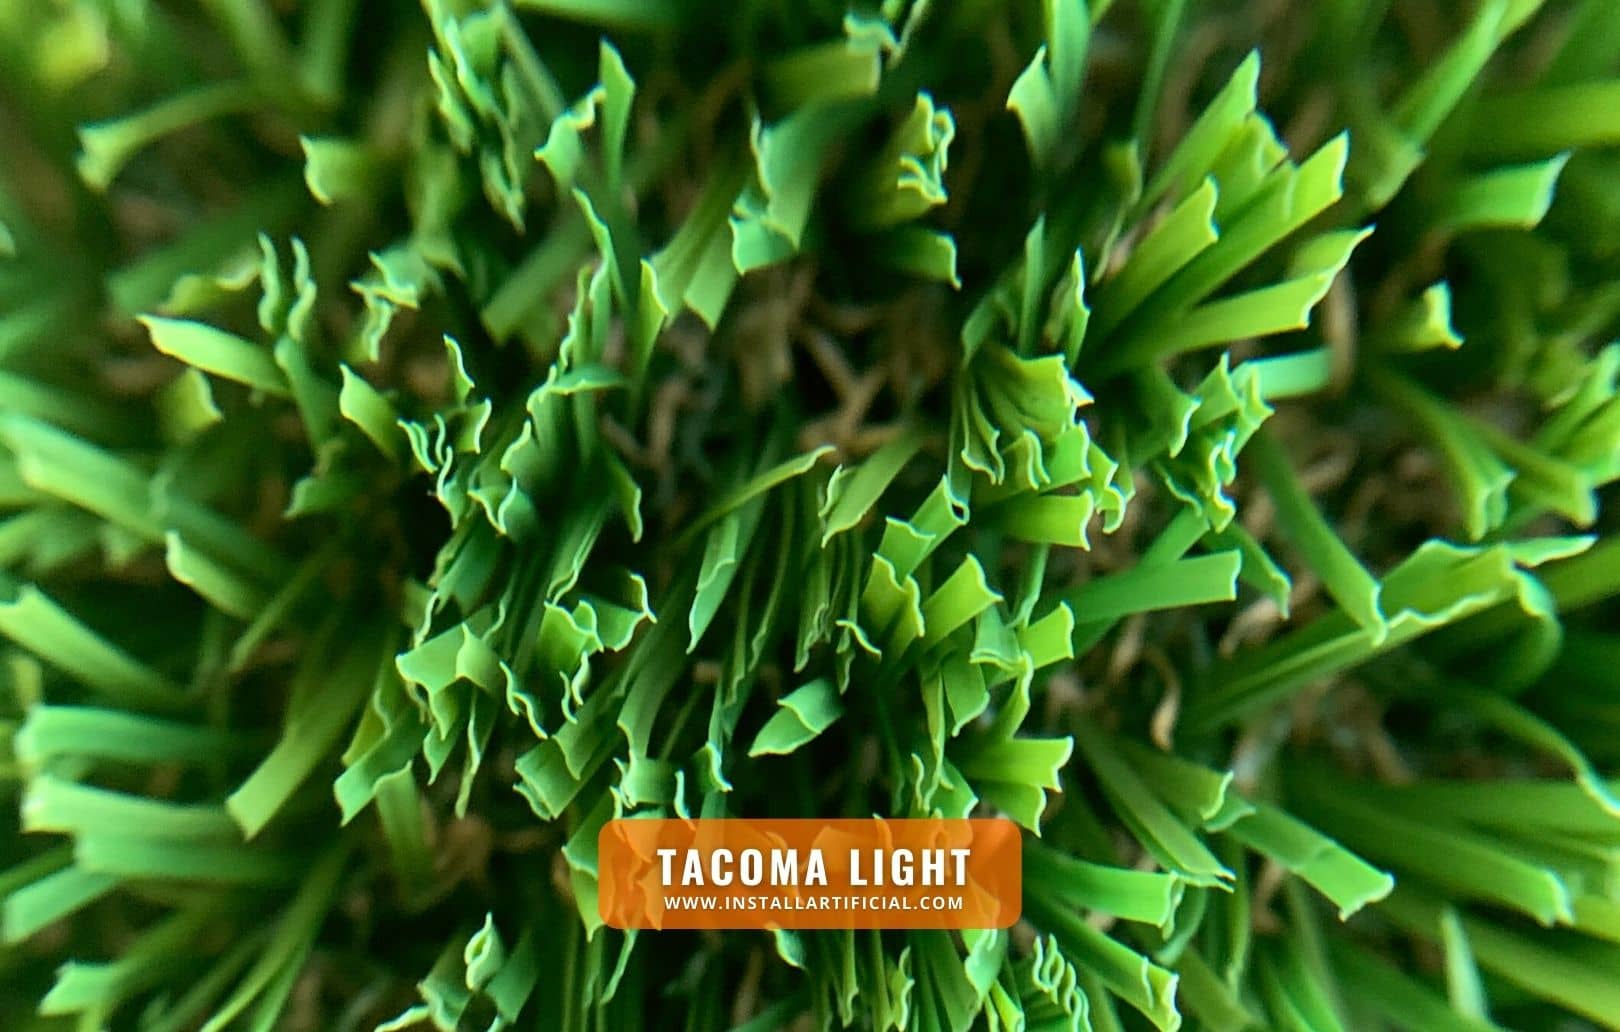 Tacoma Light, Synthetic Grass Warehouse, Everlast, macro